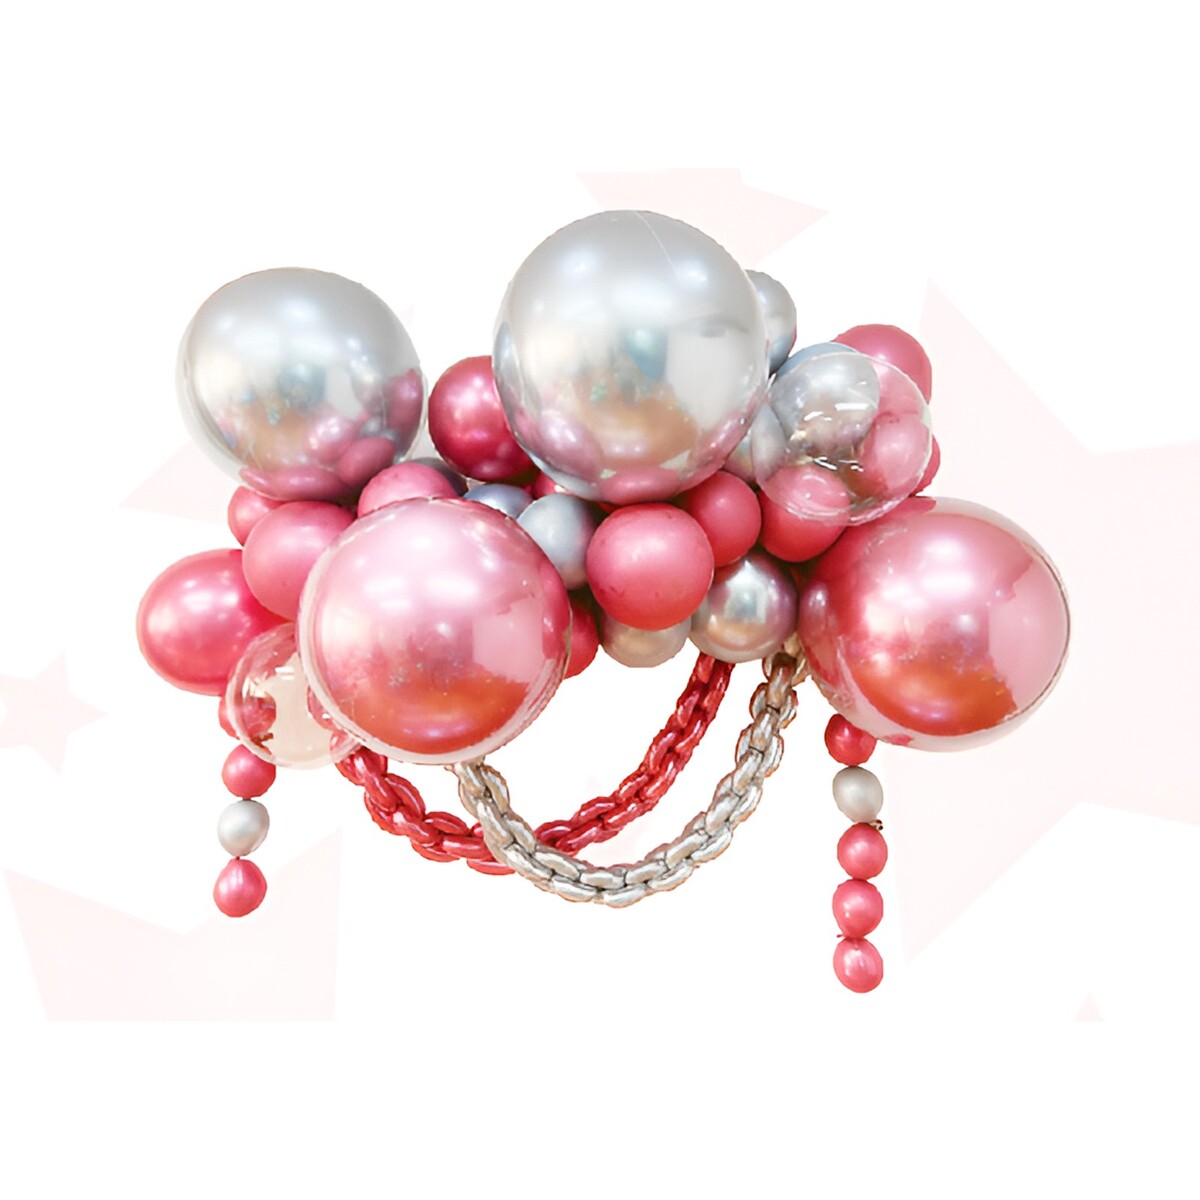 Набор для создания композиций из воздушных шаров, набор 52 шт., серебро, розовый набор для создания сумки из фетра